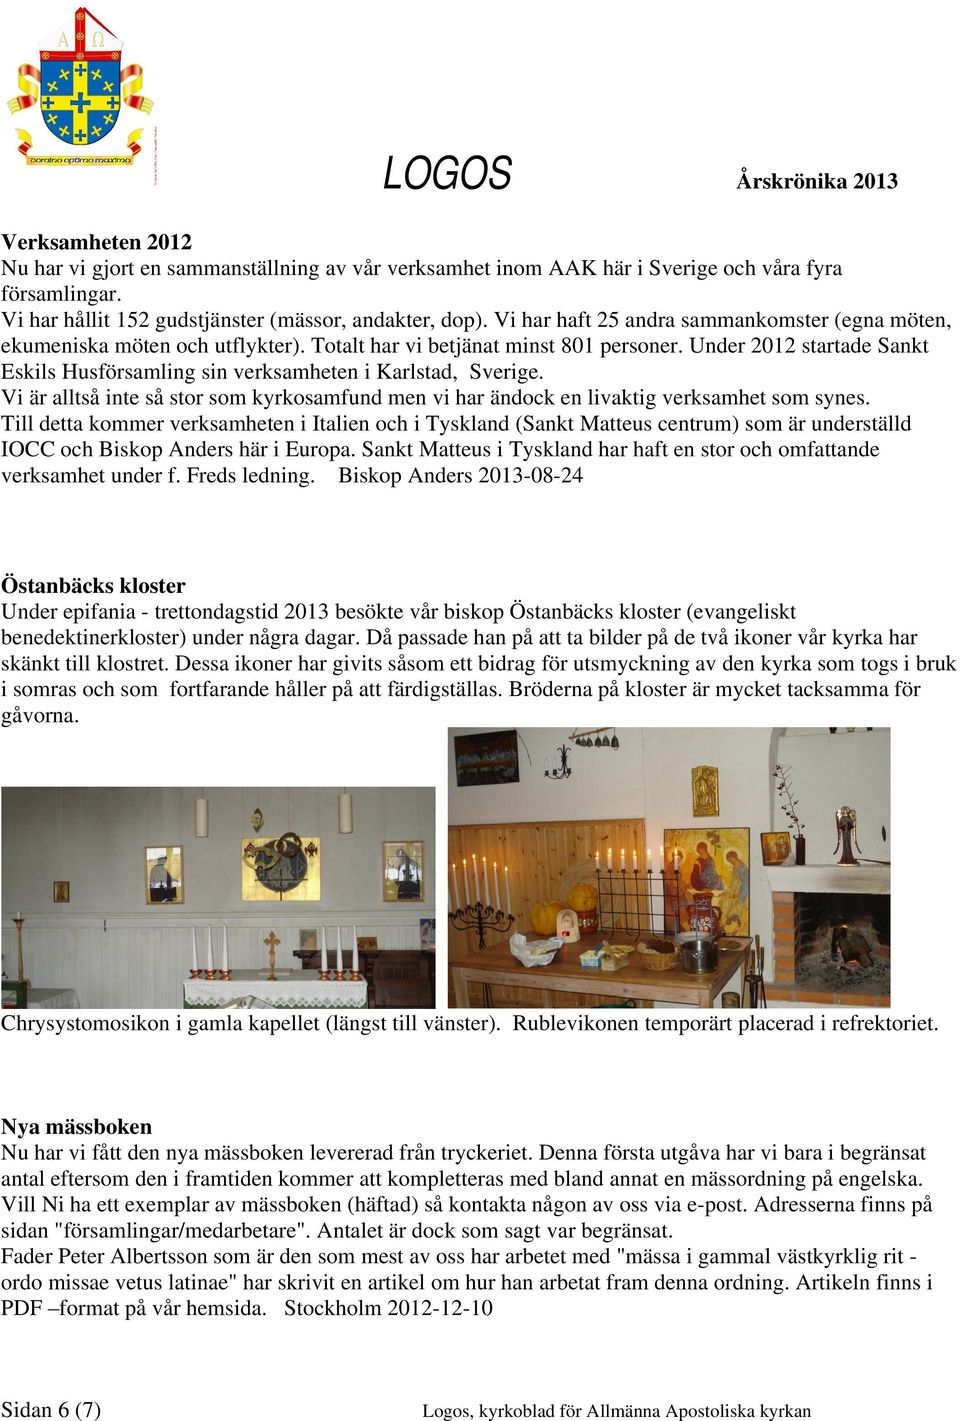 Under 2012 startade Sankt Eskils Husförsamling sin verksamheten i Karlstad, Sverige. Vi är alltså inte så stor som kyrkosamfund men vi har ändock en livaktig verksamhet som synes.